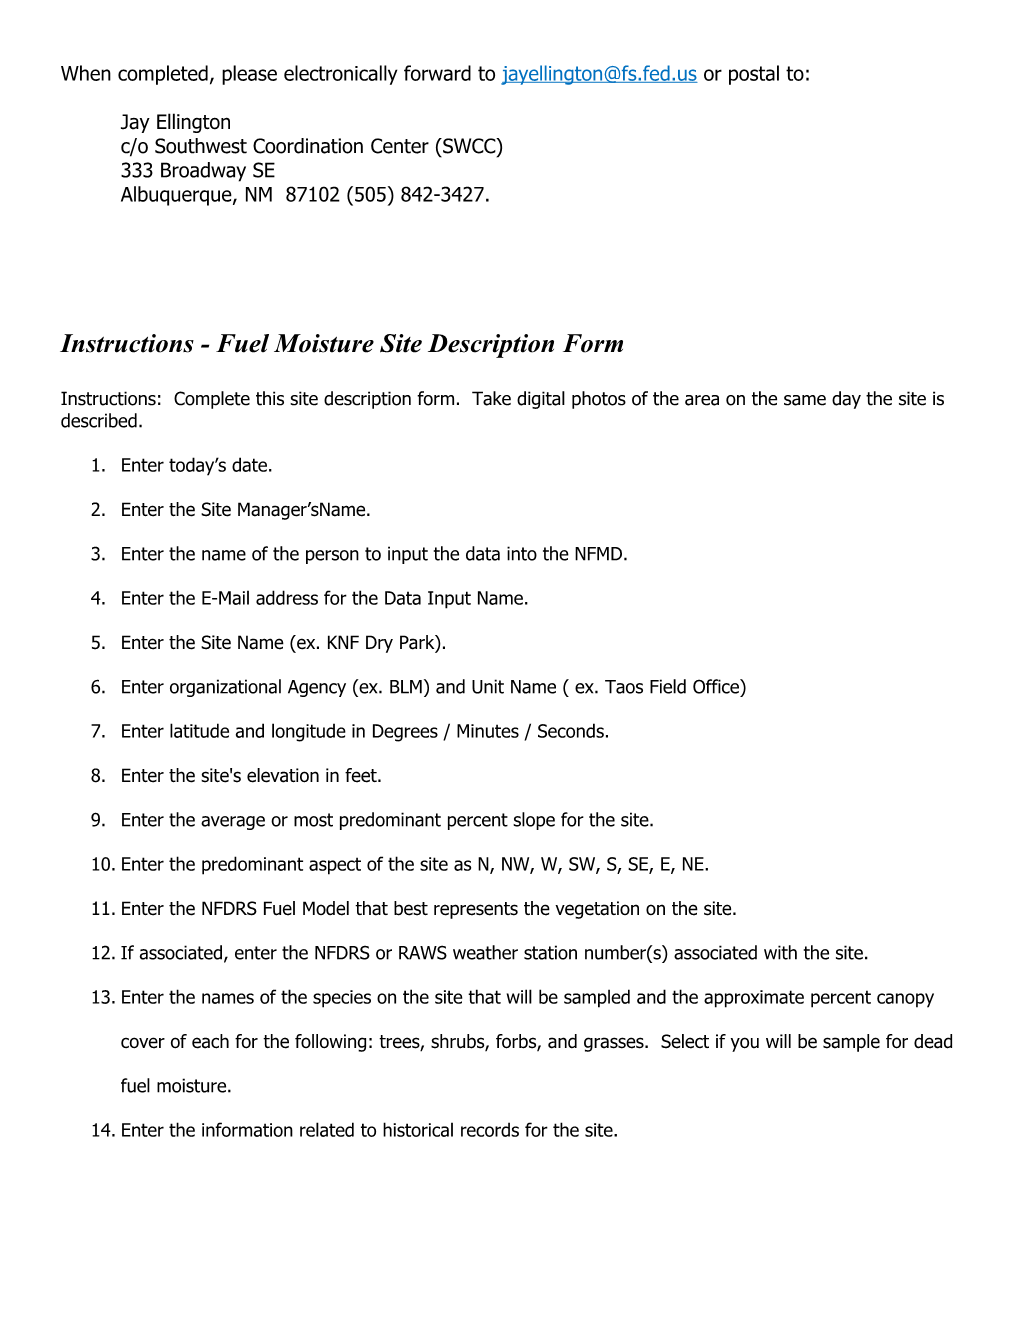 1. Fuel Moisture Site Description Form